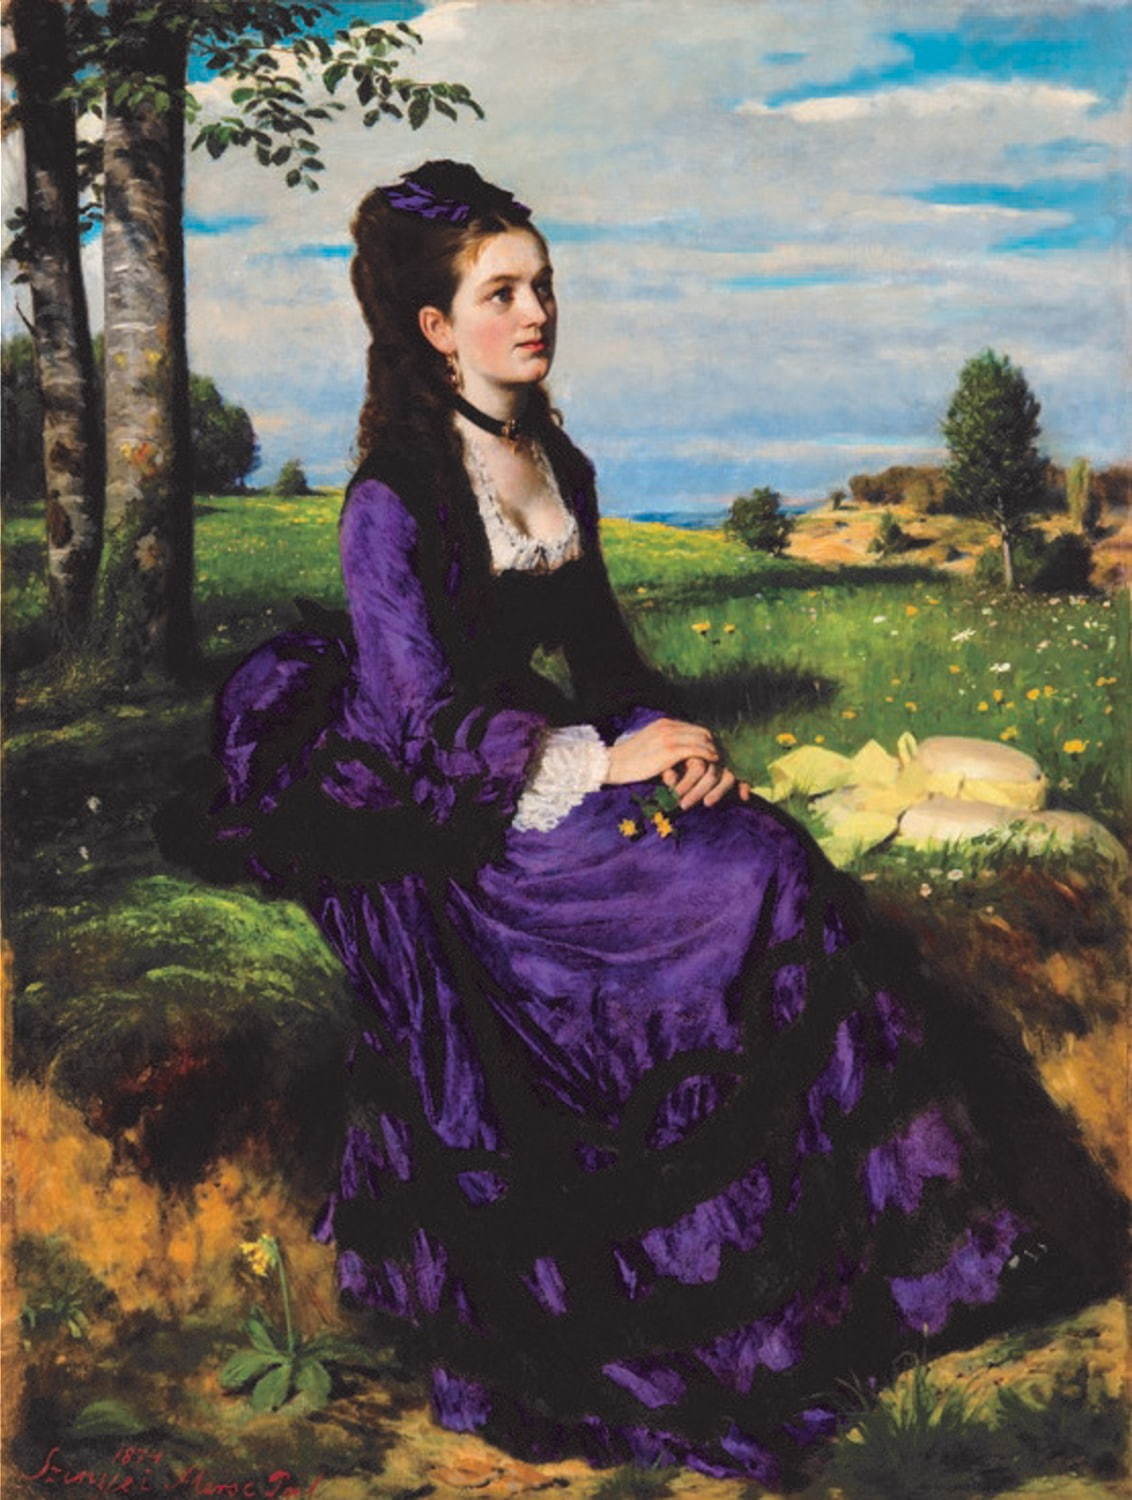 シニェイ・メルシェ・パール 《紫のドレスの婦人》 1874年 油彩／カンヴァス
ブダペスト、ハンガリー・ ナショナル・ギャラリー